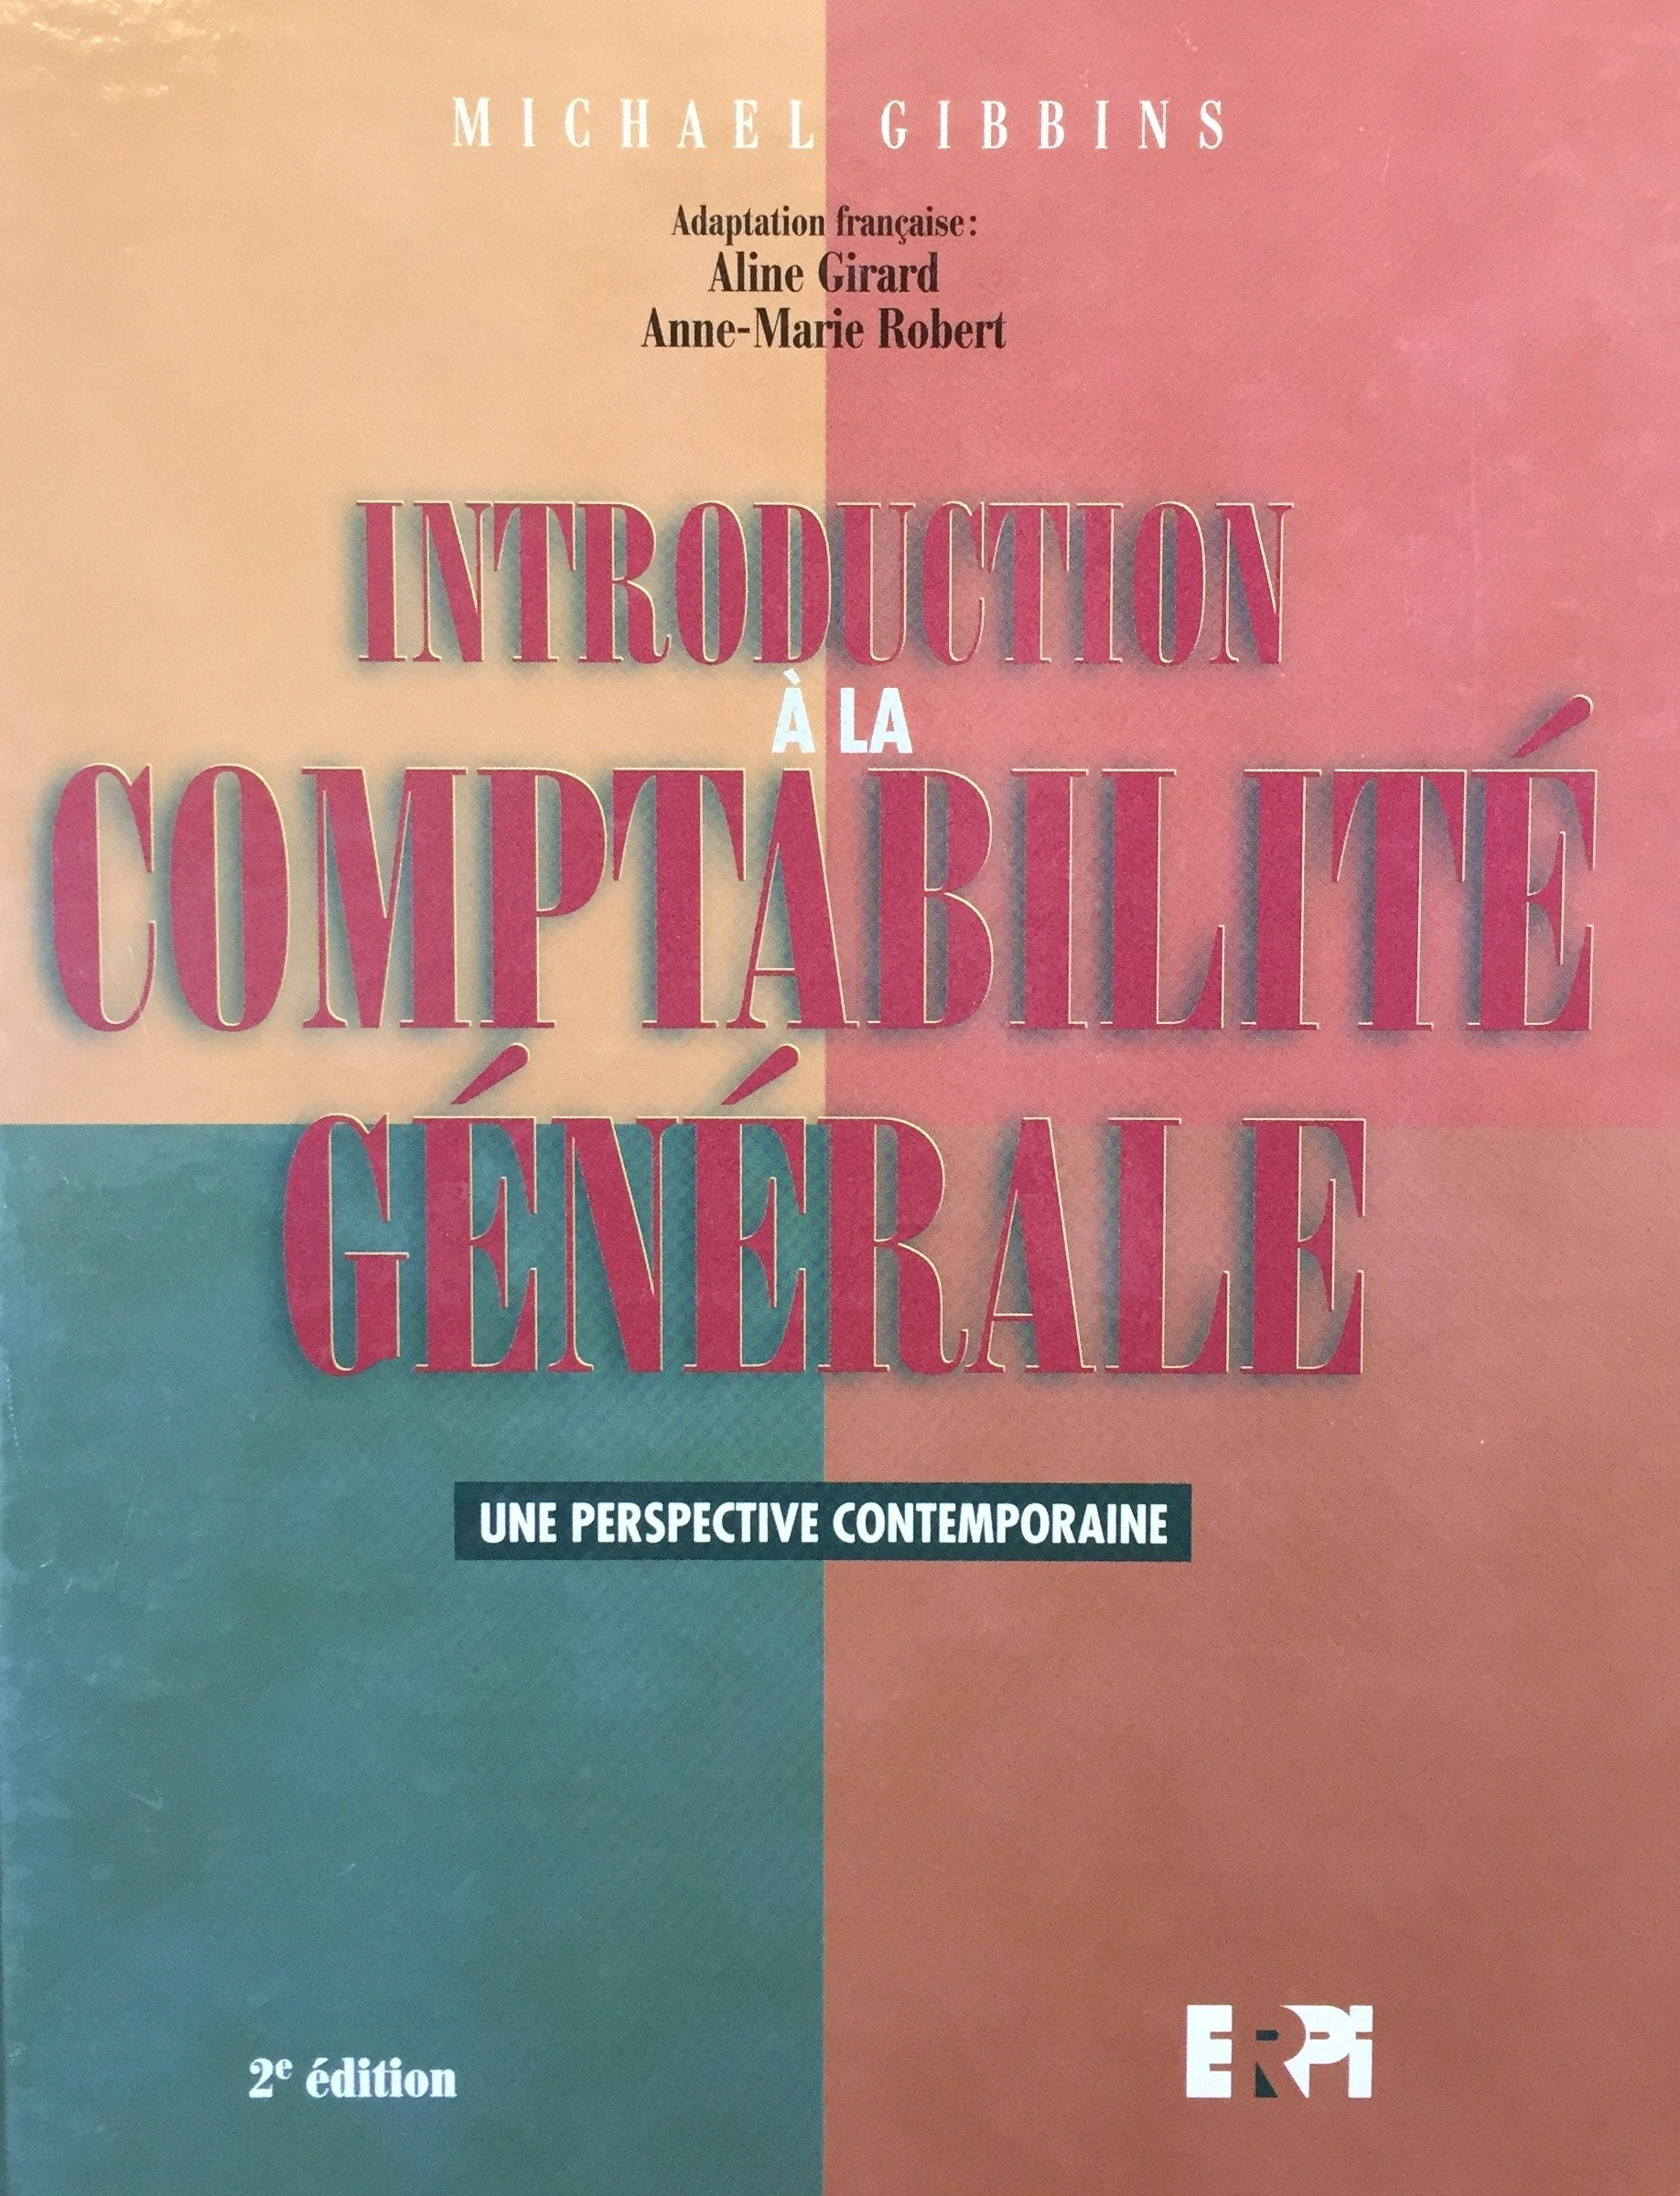 Livre ISBN 2761310616 Introduction à la comptabilité générale: Une perspective contemporaine (Michael Gibbins)